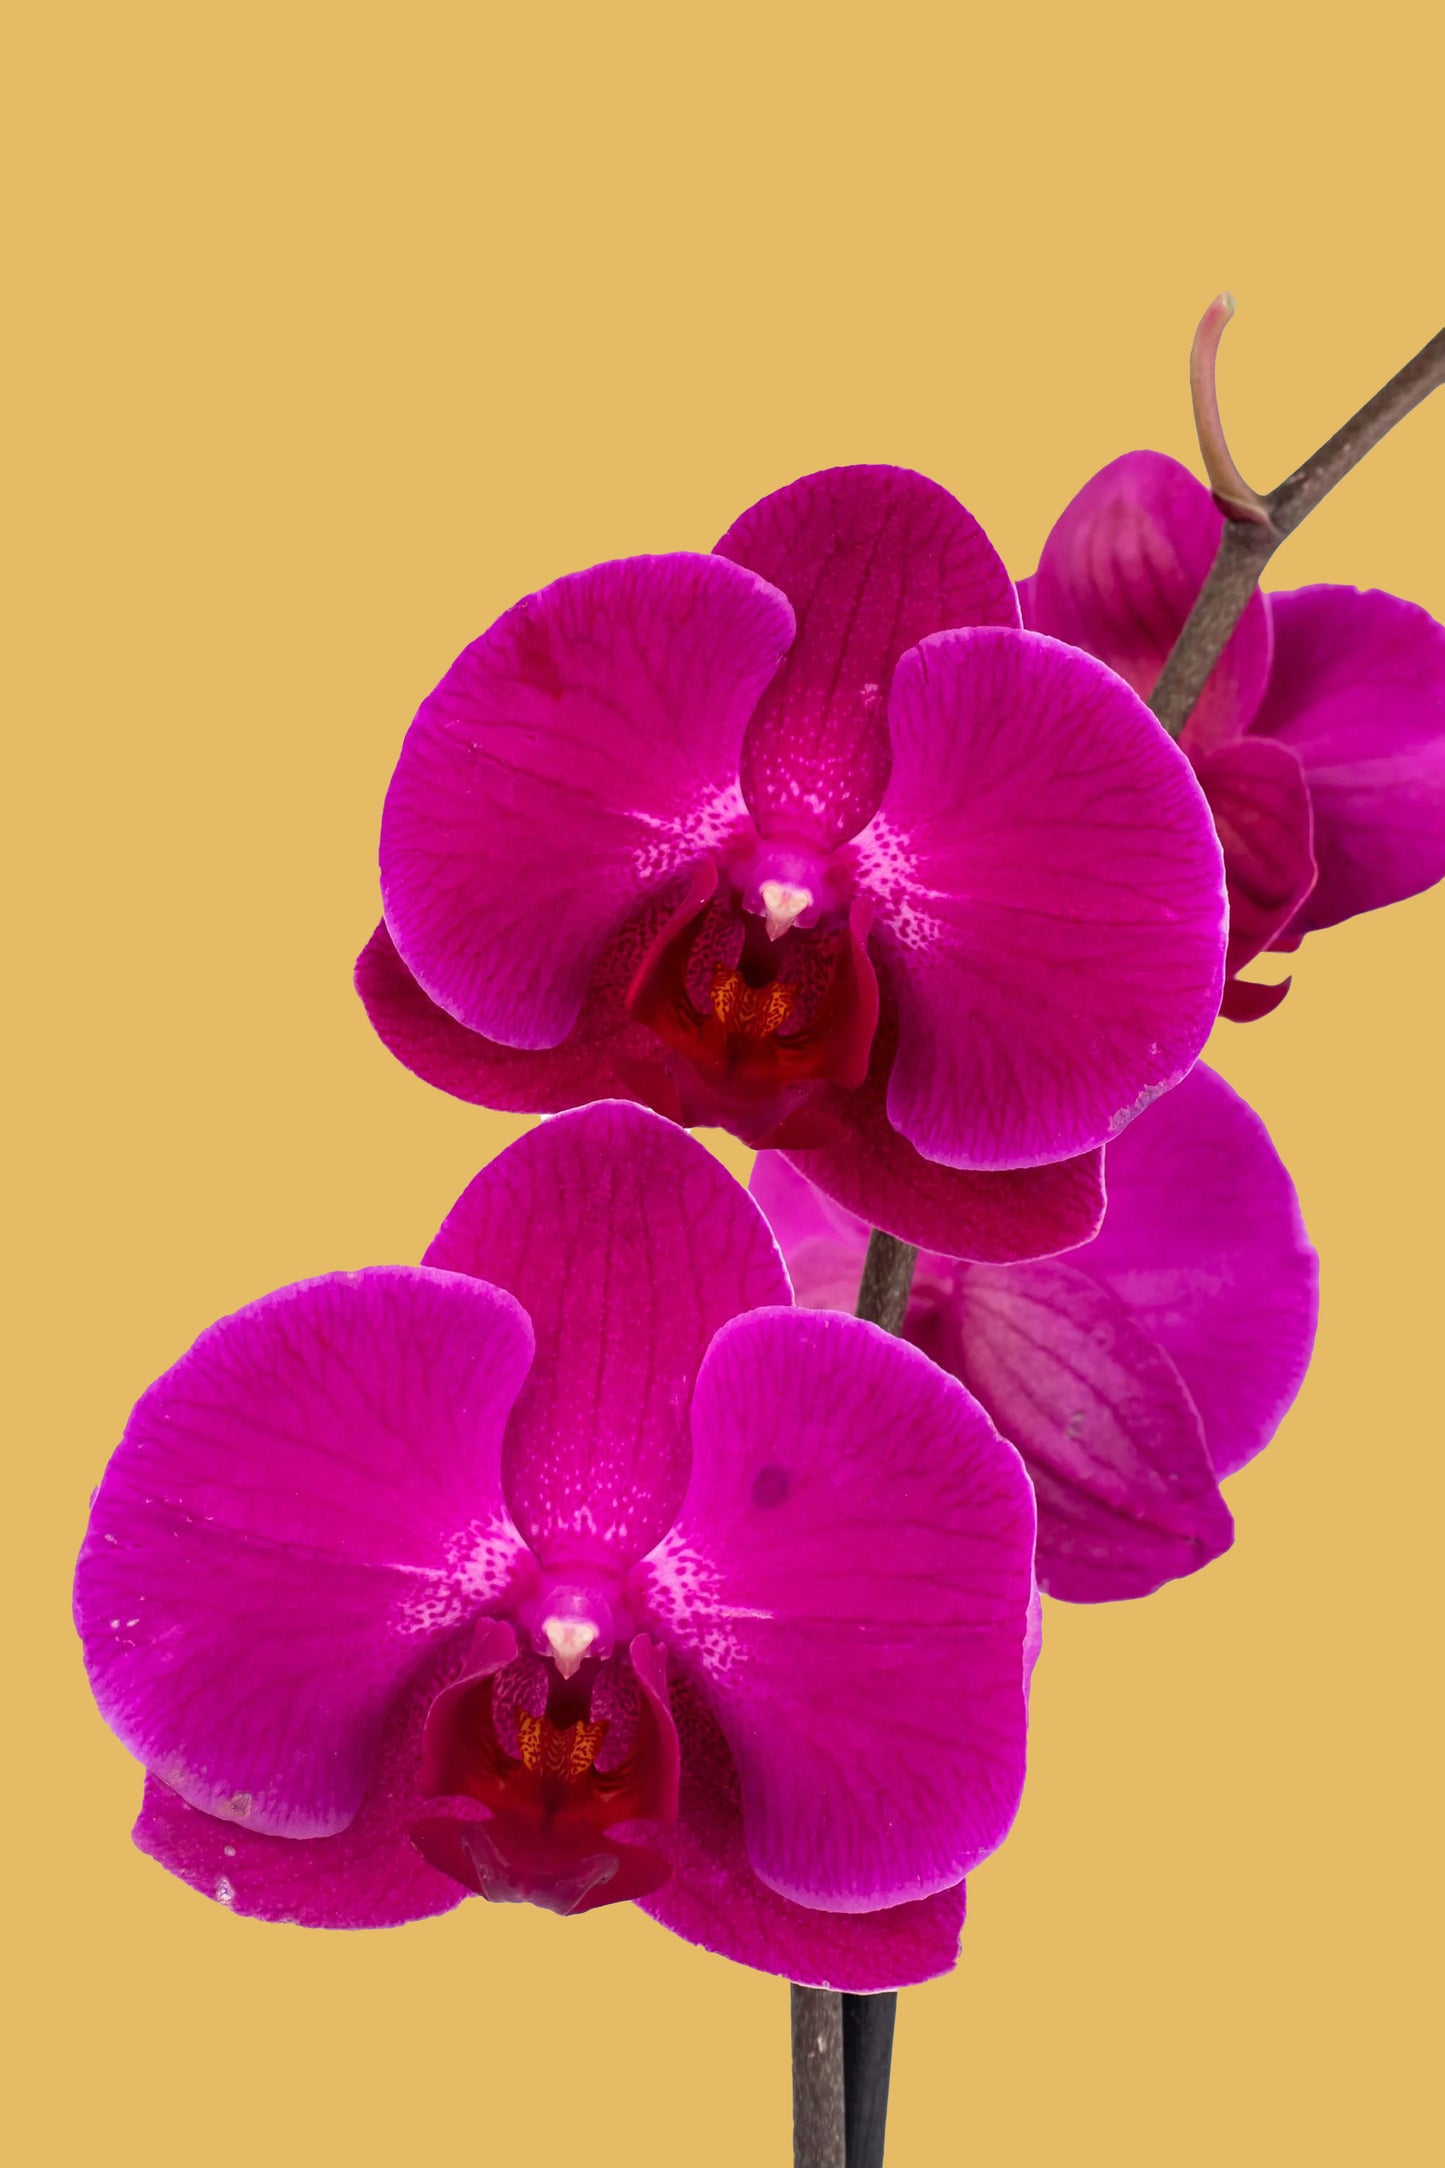 Remedios Varo - Orquídea en Maceta Dorada